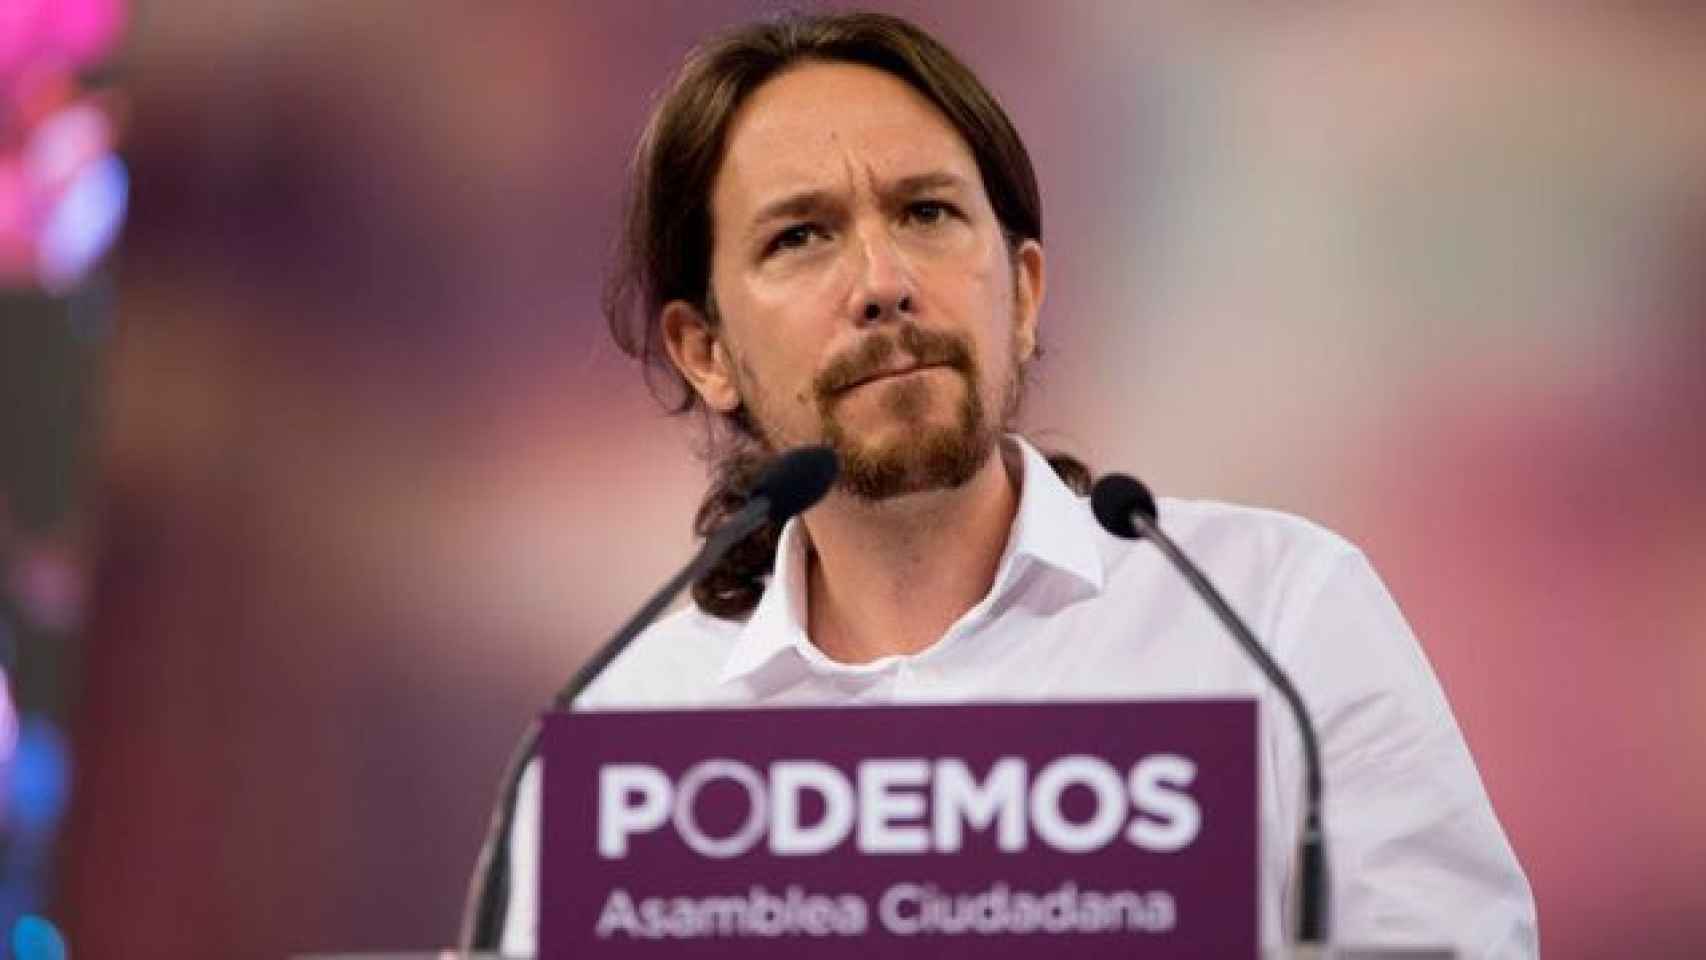 El secretario general de Podemos, Pablo Iglesias, durante un mitin / CG